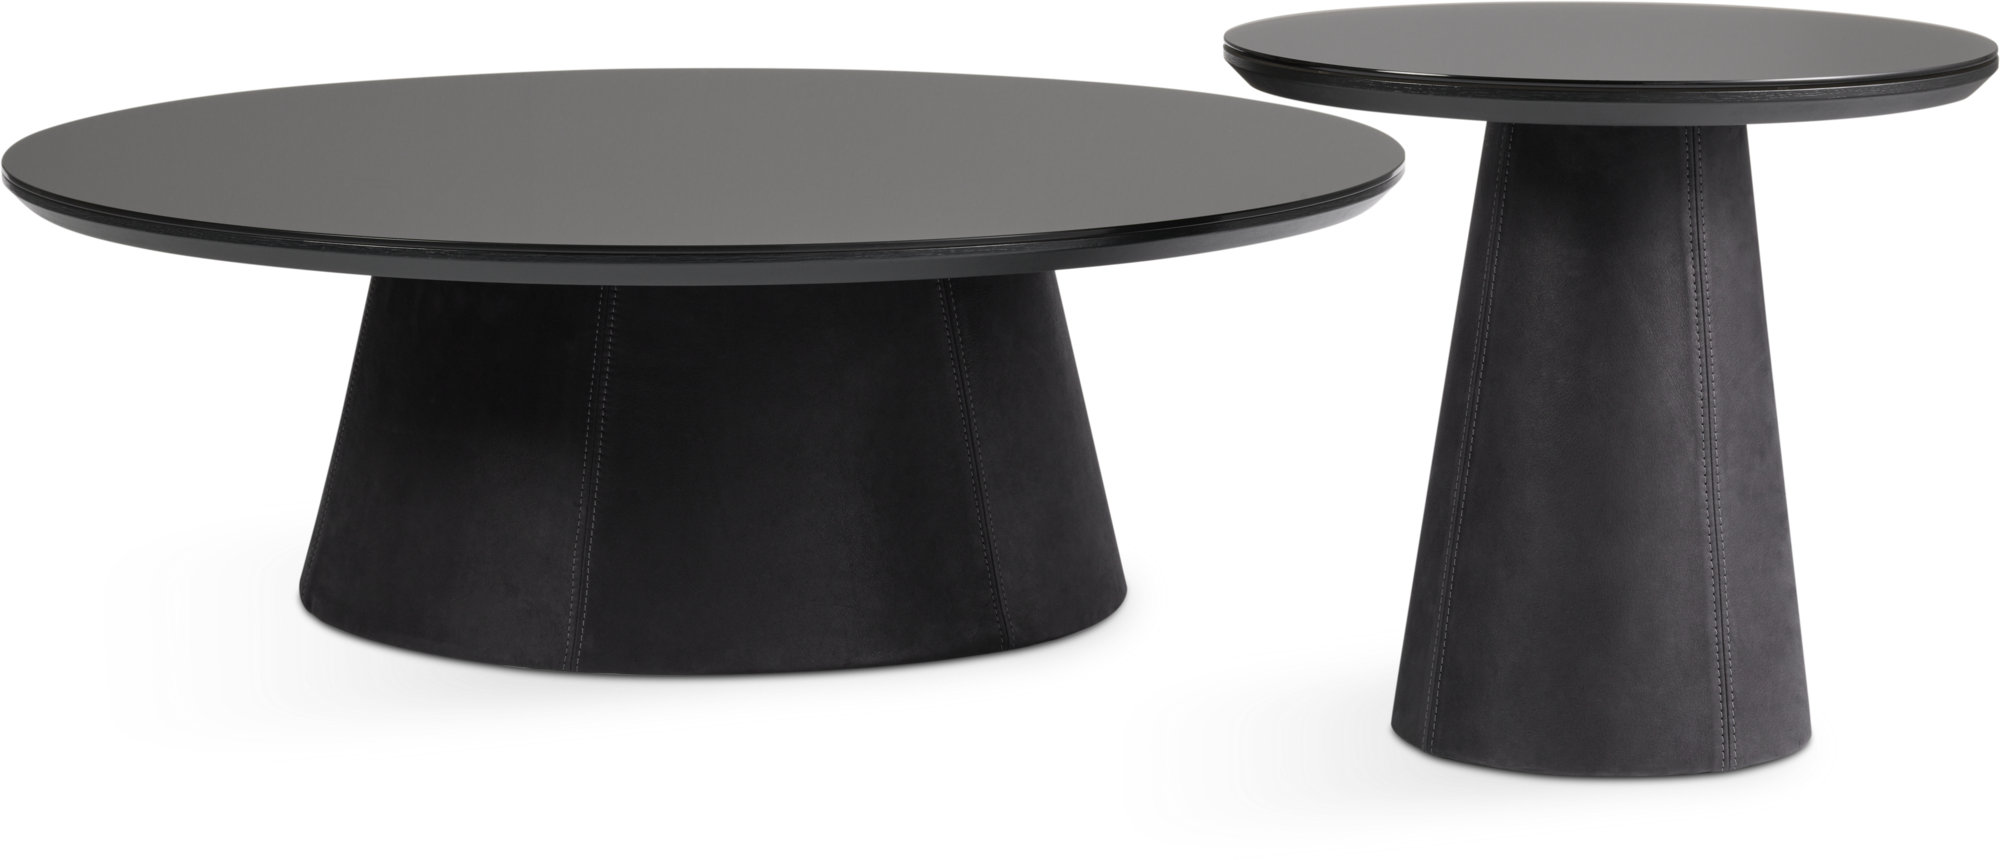 Zuna coffee table